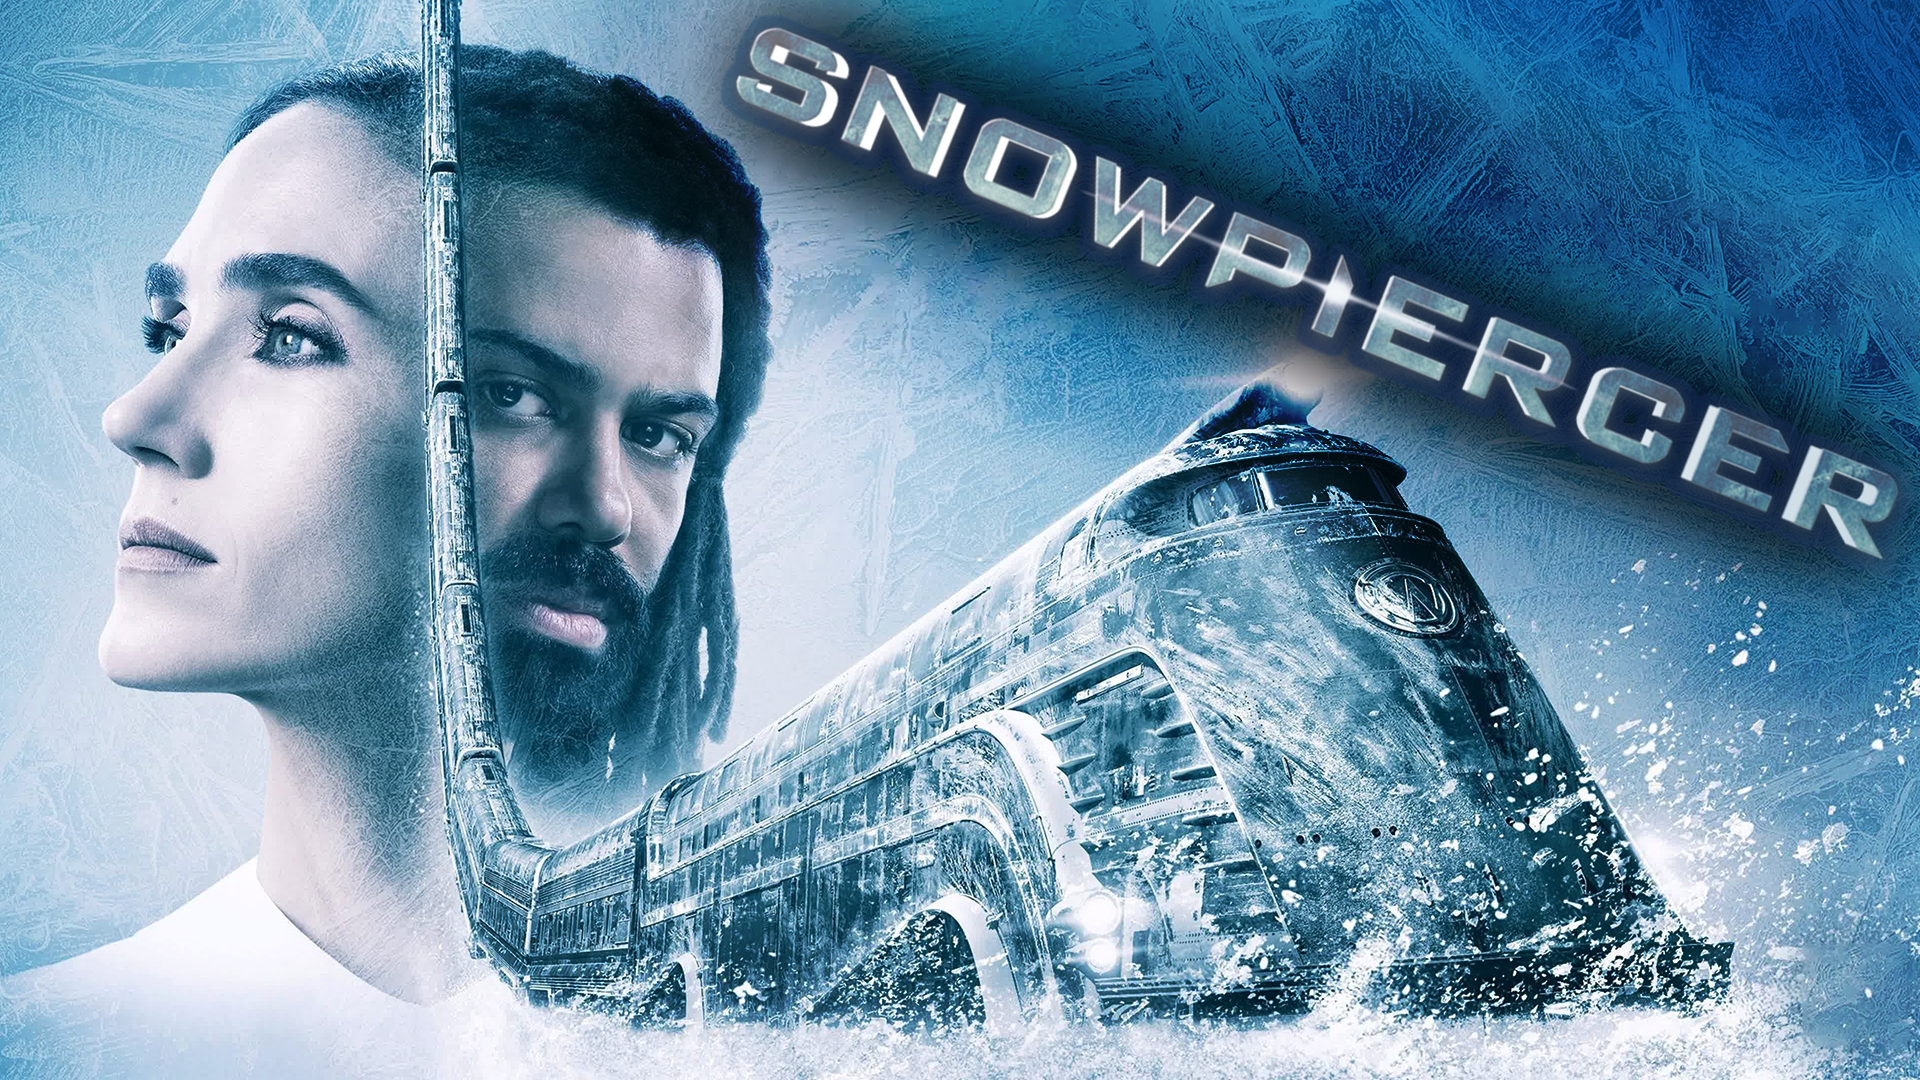 Сквозь снег – 1 сезон 6 серия / Snowpiercer